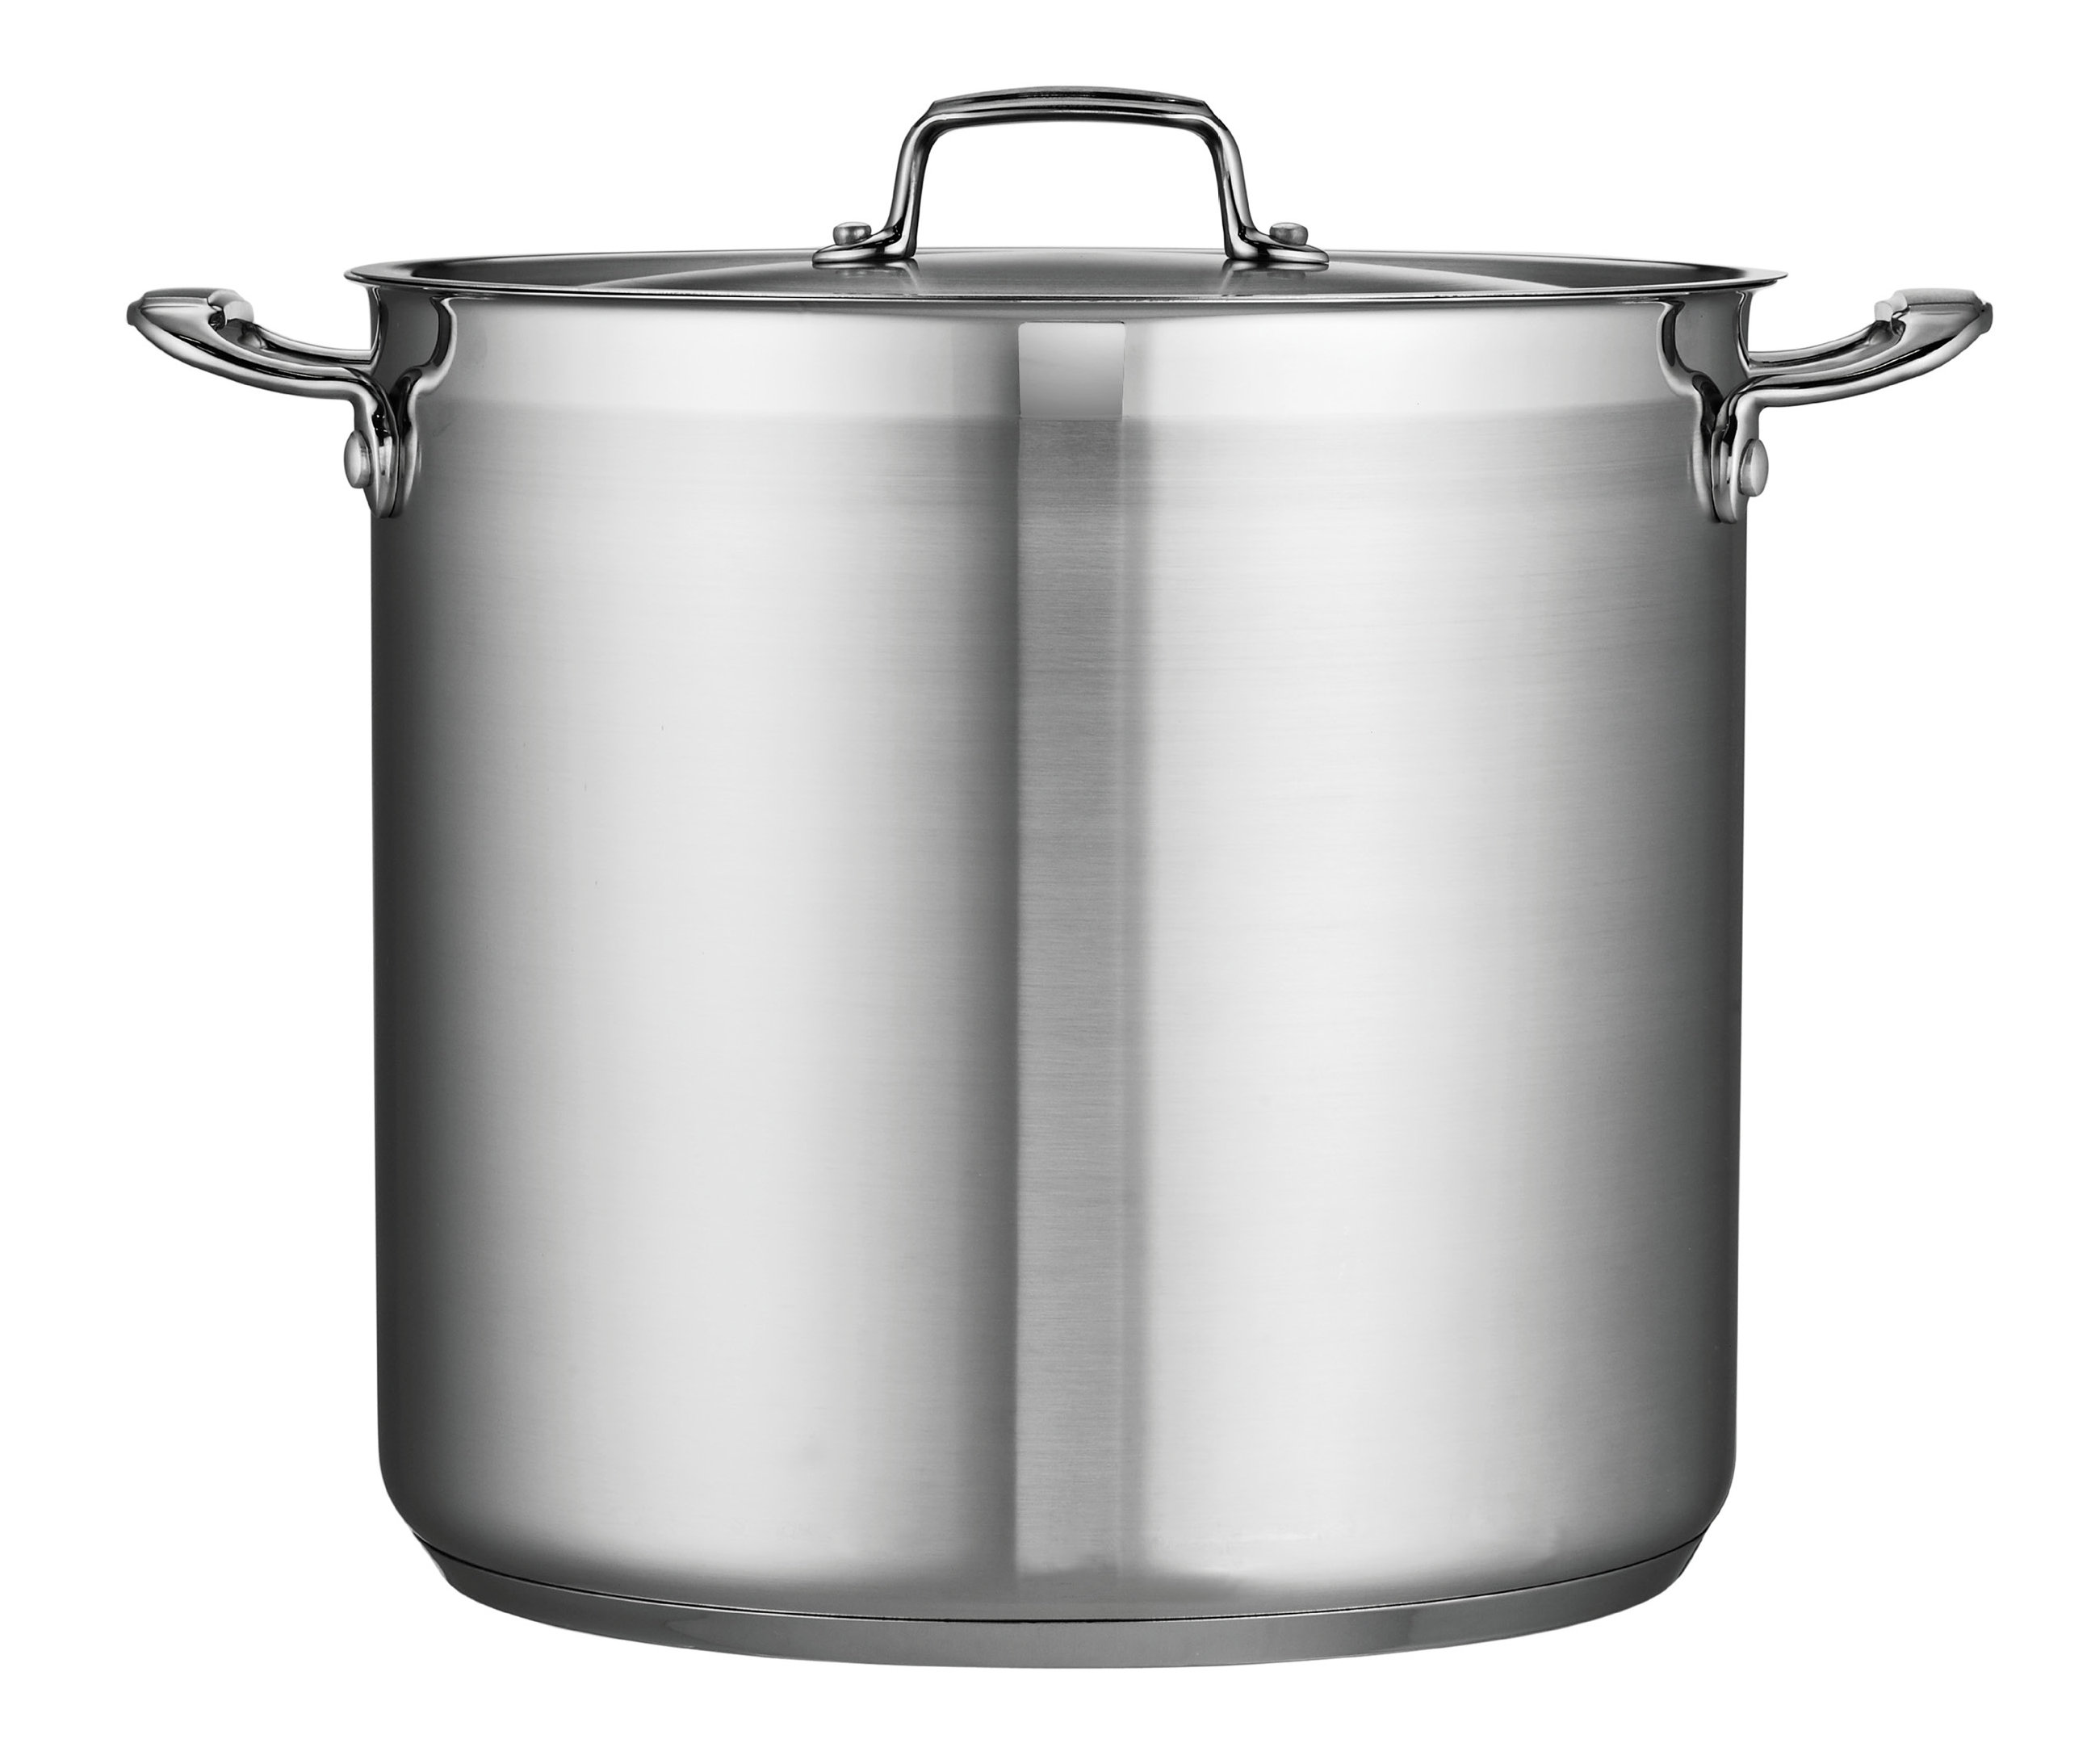 https://assets.wfcdn.com/im/95308382/compr-r85/2783/27838051/tramontina-gourmet-aluminum-stock-pot-with-lid.jpg